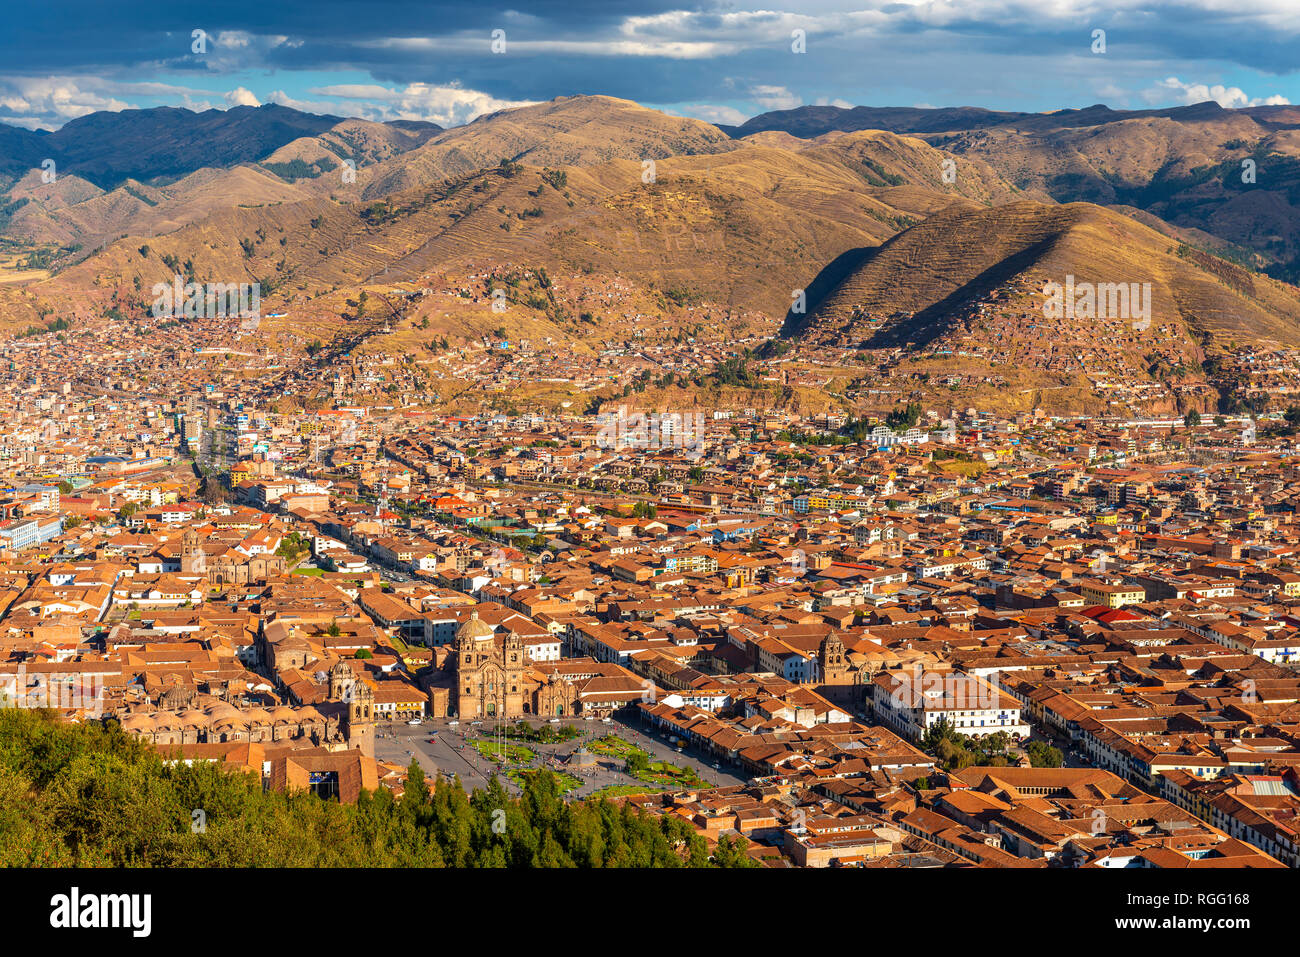 Paysage urbain de l'ancienne capitale Inca Cusco au coucher du soleil situé dans une vallée de la cordillère des Andes, au Pérou, en Amérique du Sud. Banque D'Images